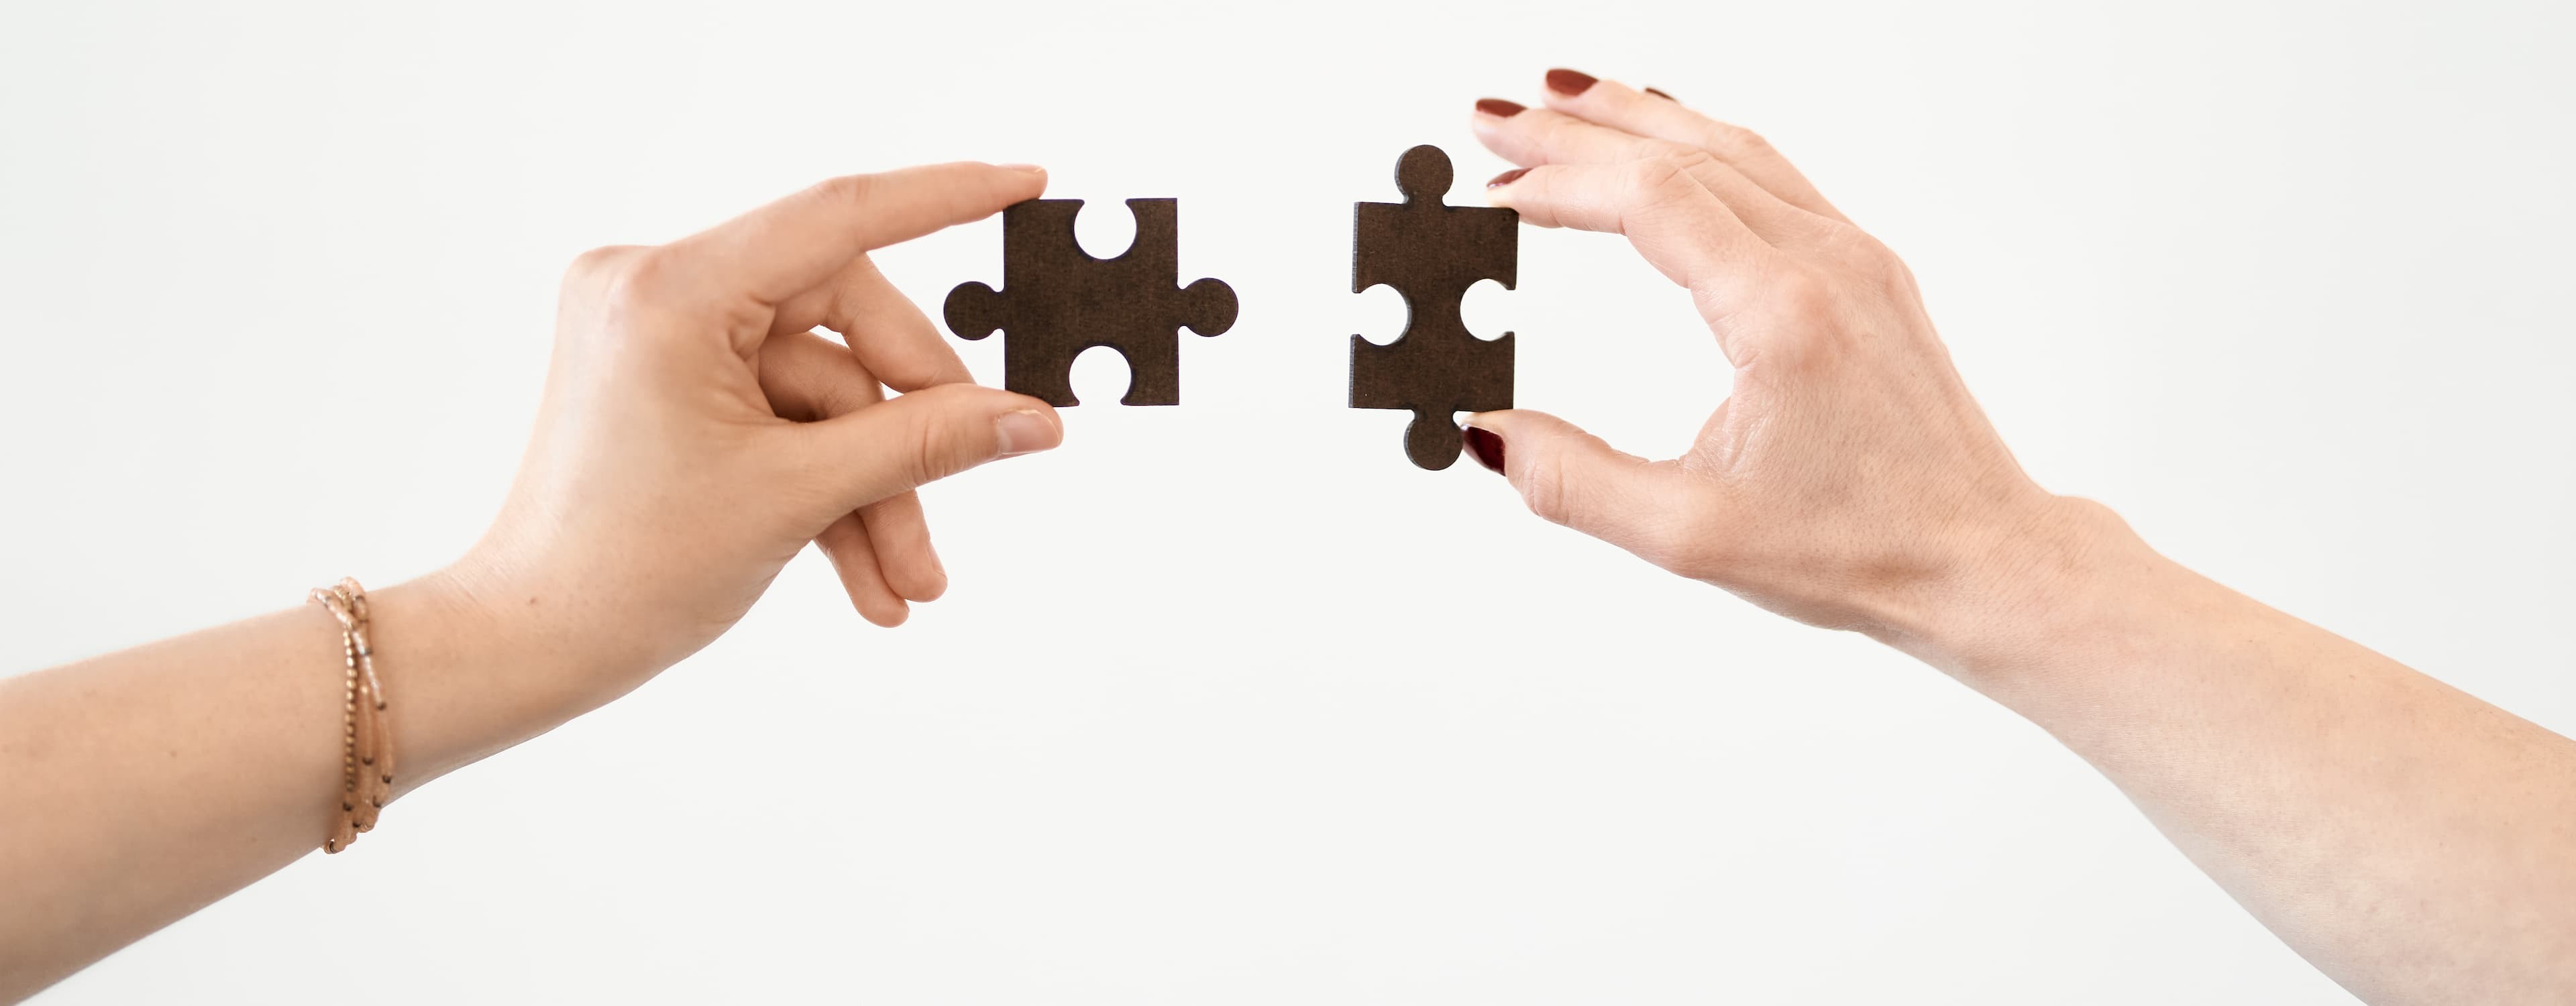 Bild zeigt Hände, die zwei Puzzleteile zusammensetzen